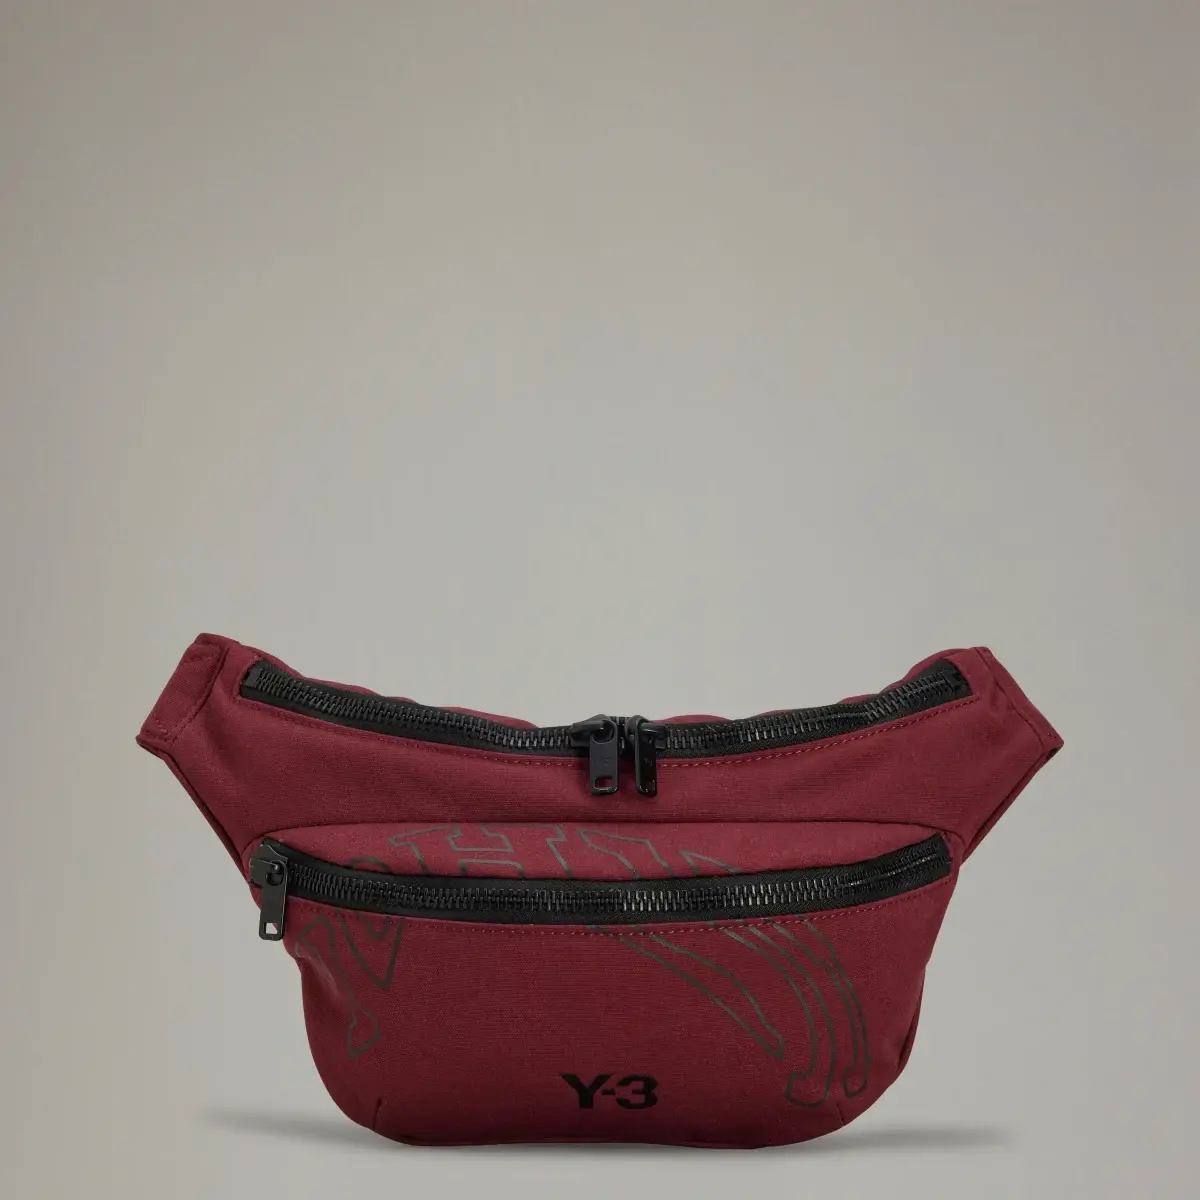 Adidas Y-3 Morphed Crossbody Bag. 1